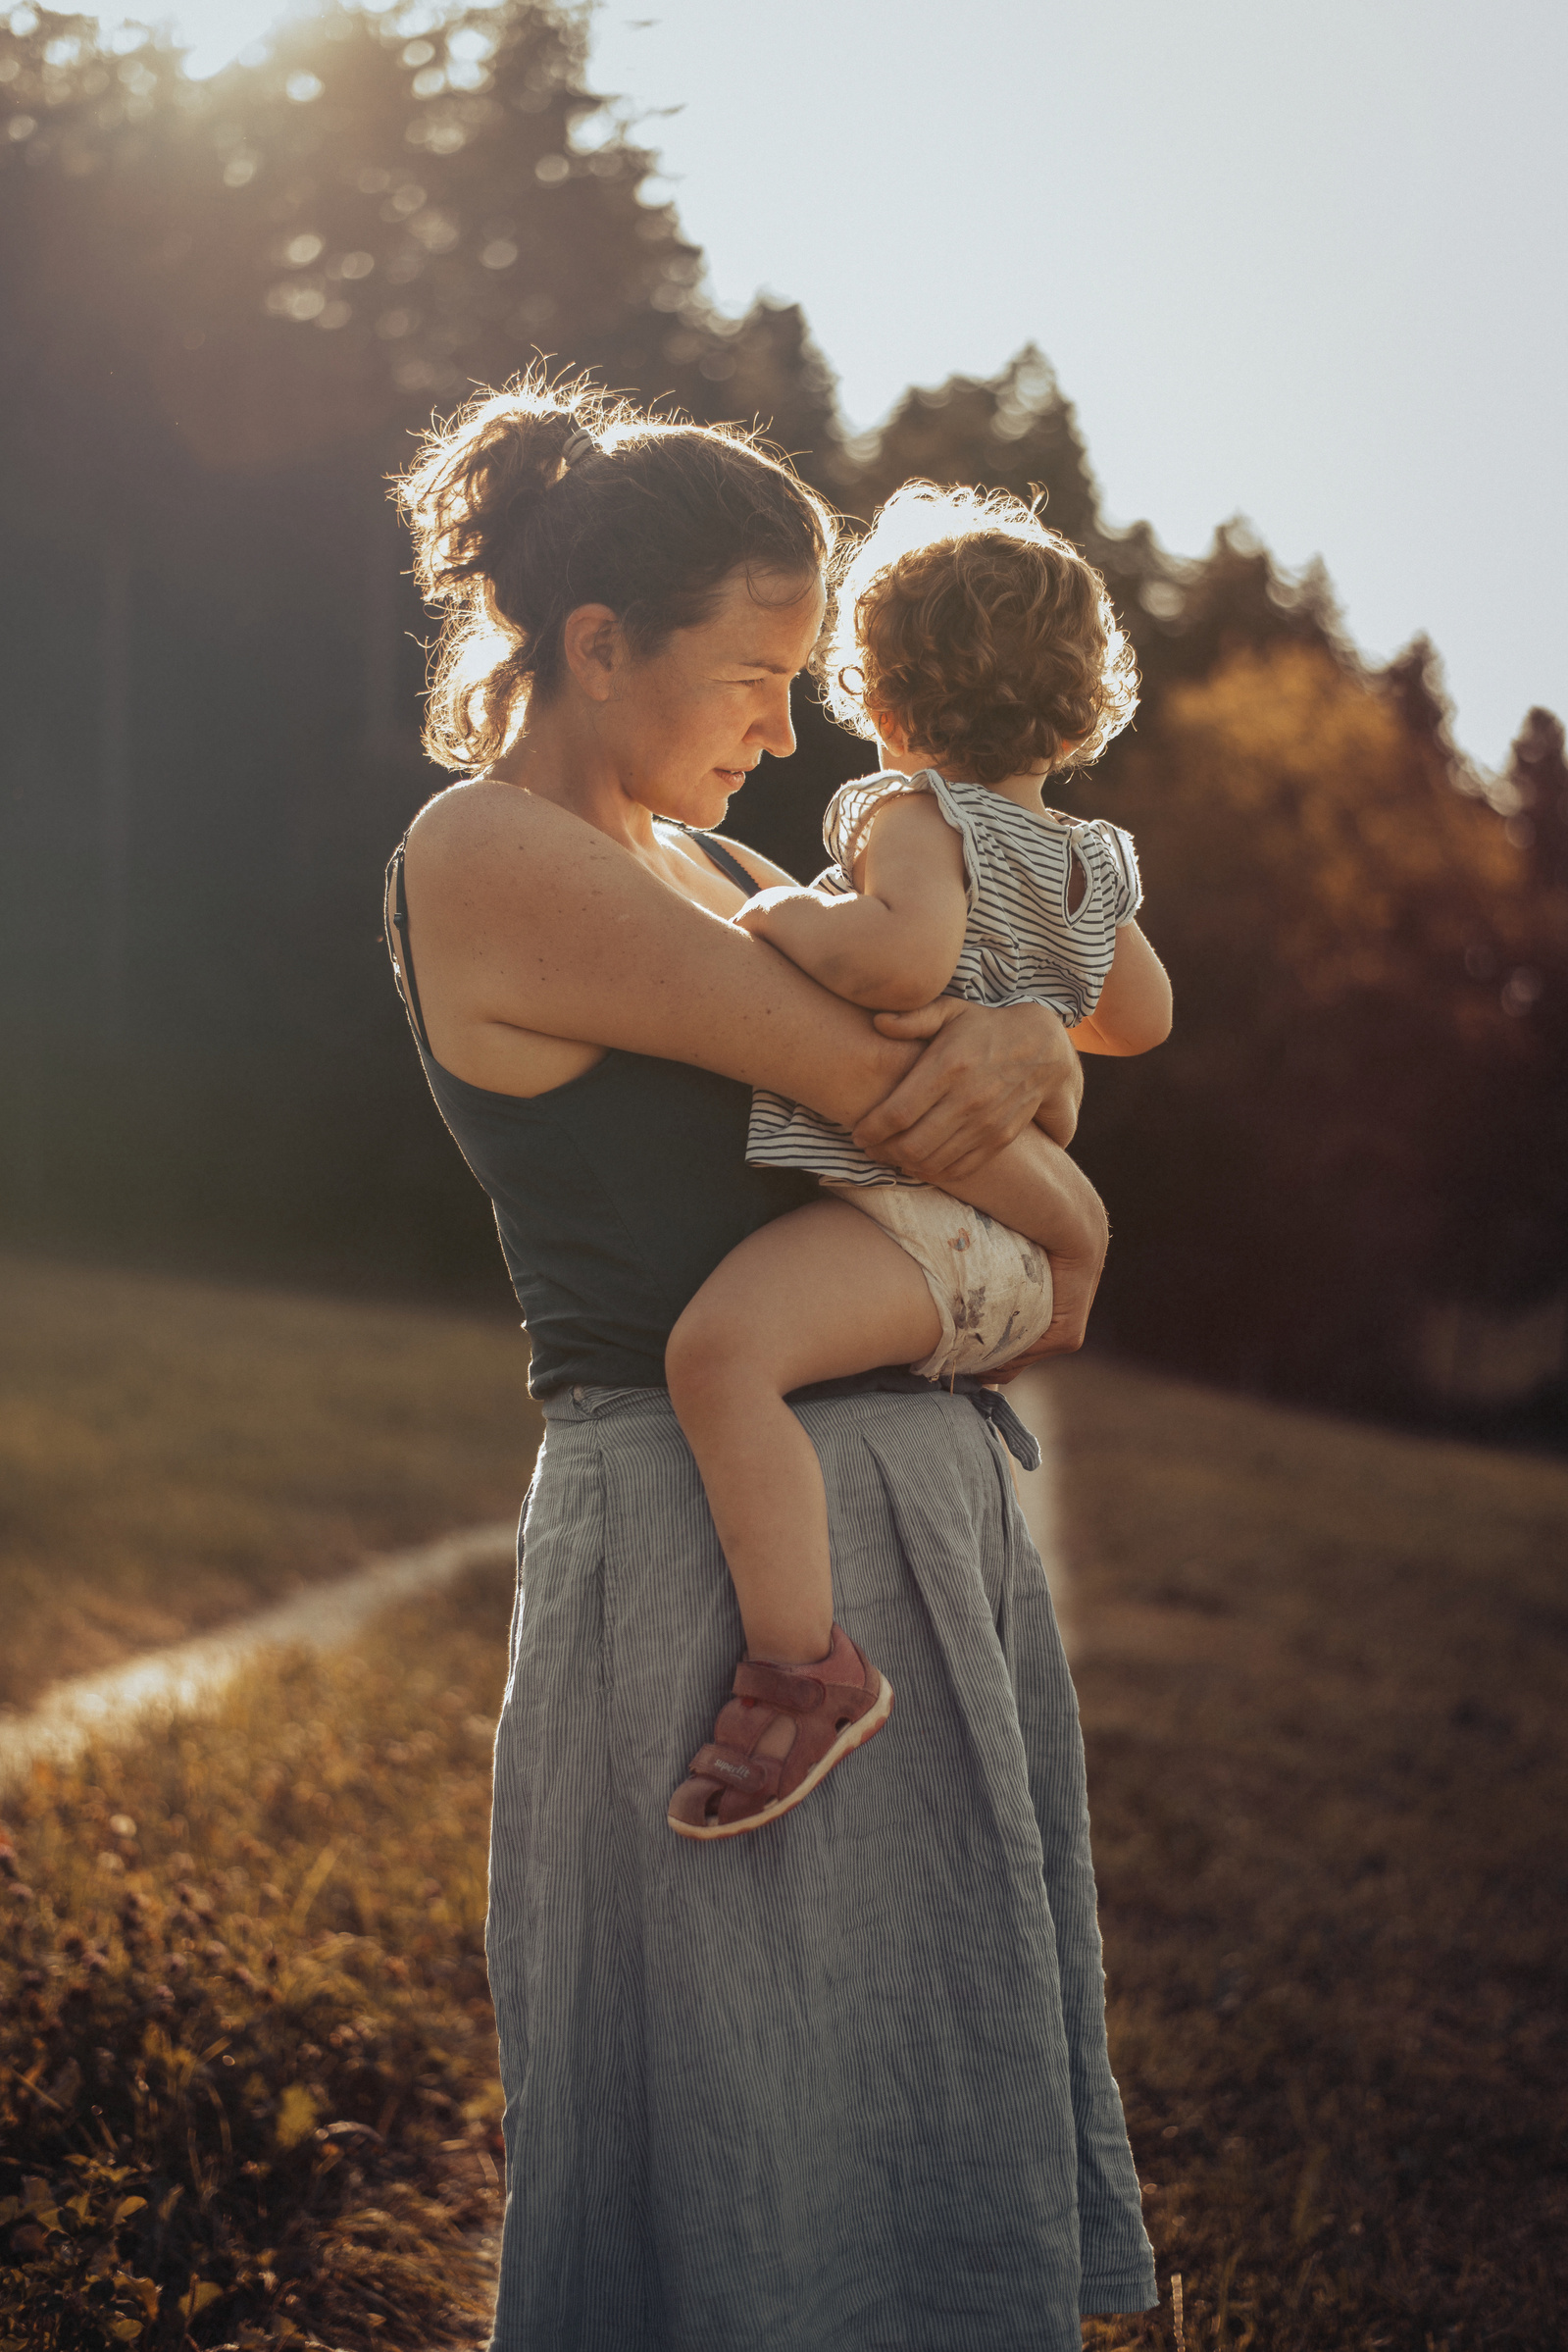 Junge Frau mit ihrem Kind auf dem Arm in der stimmungsvollen Abendsonne auf einer Wiese stehend.